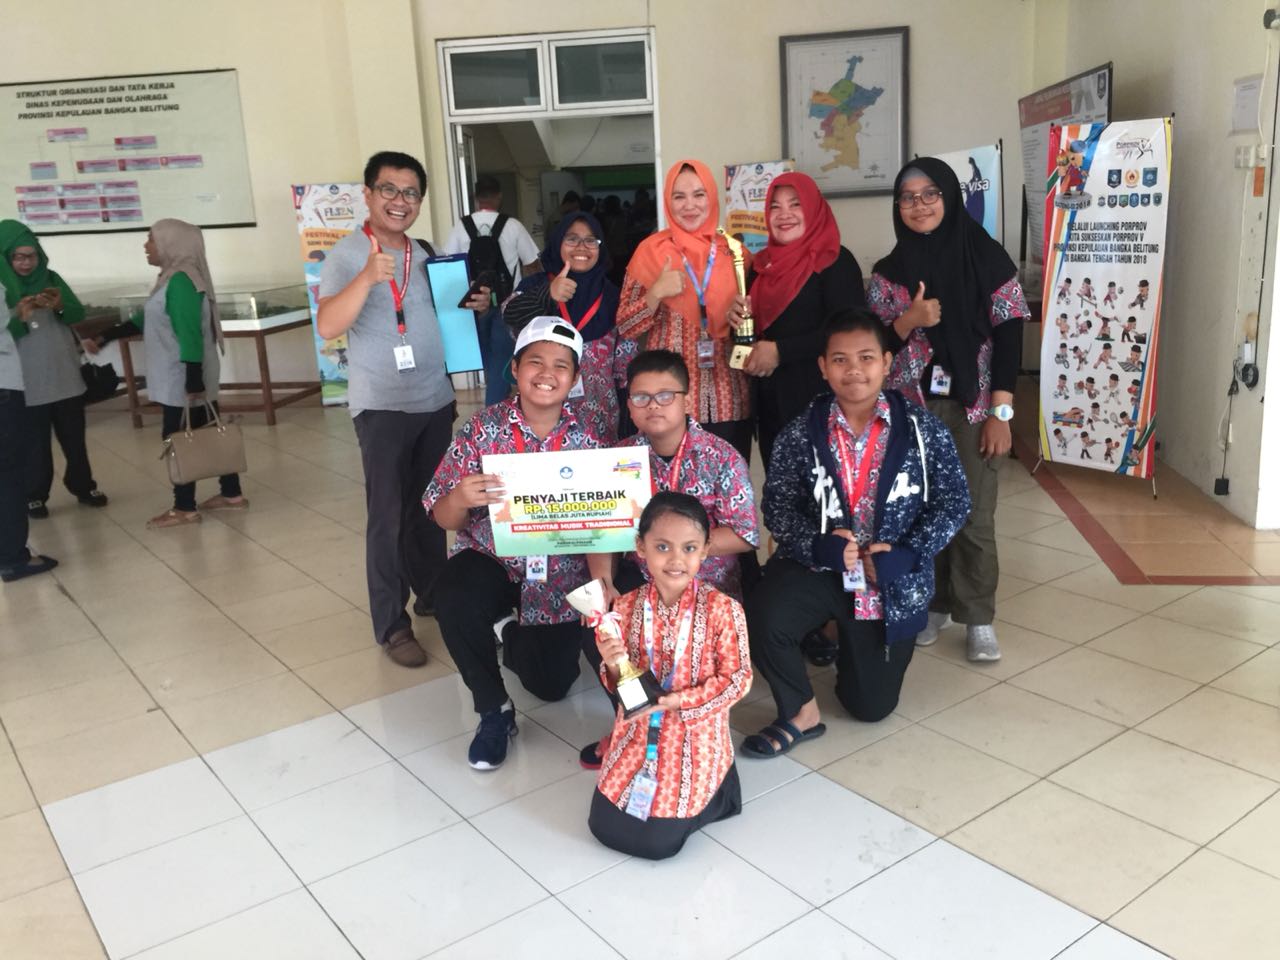 SMPN 1 Pekanbaru Berhasil Raih Penyaji Terbaik Musik Tradisional FLS2N 2018 di Bangka Belitung